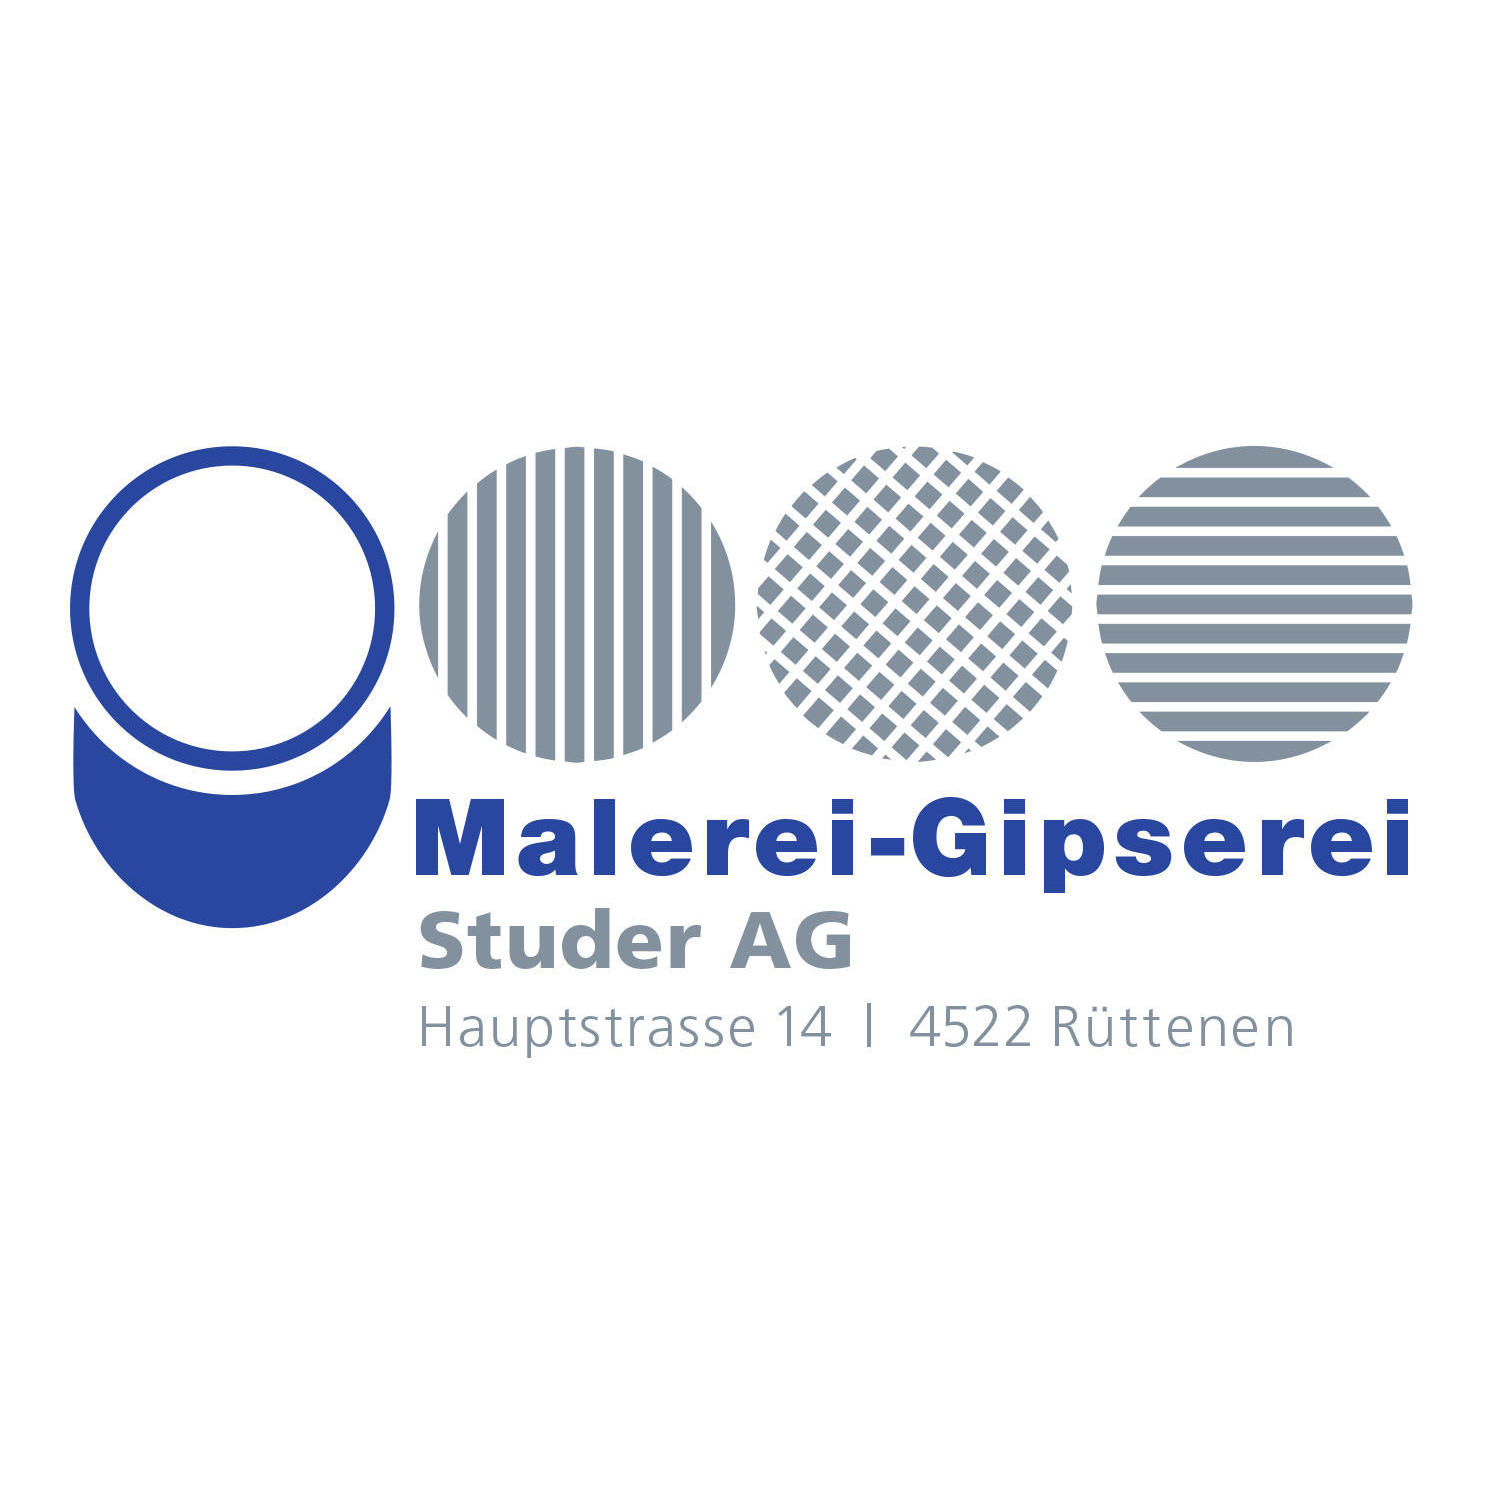 Malerei - Gipserei Studer AG Logo